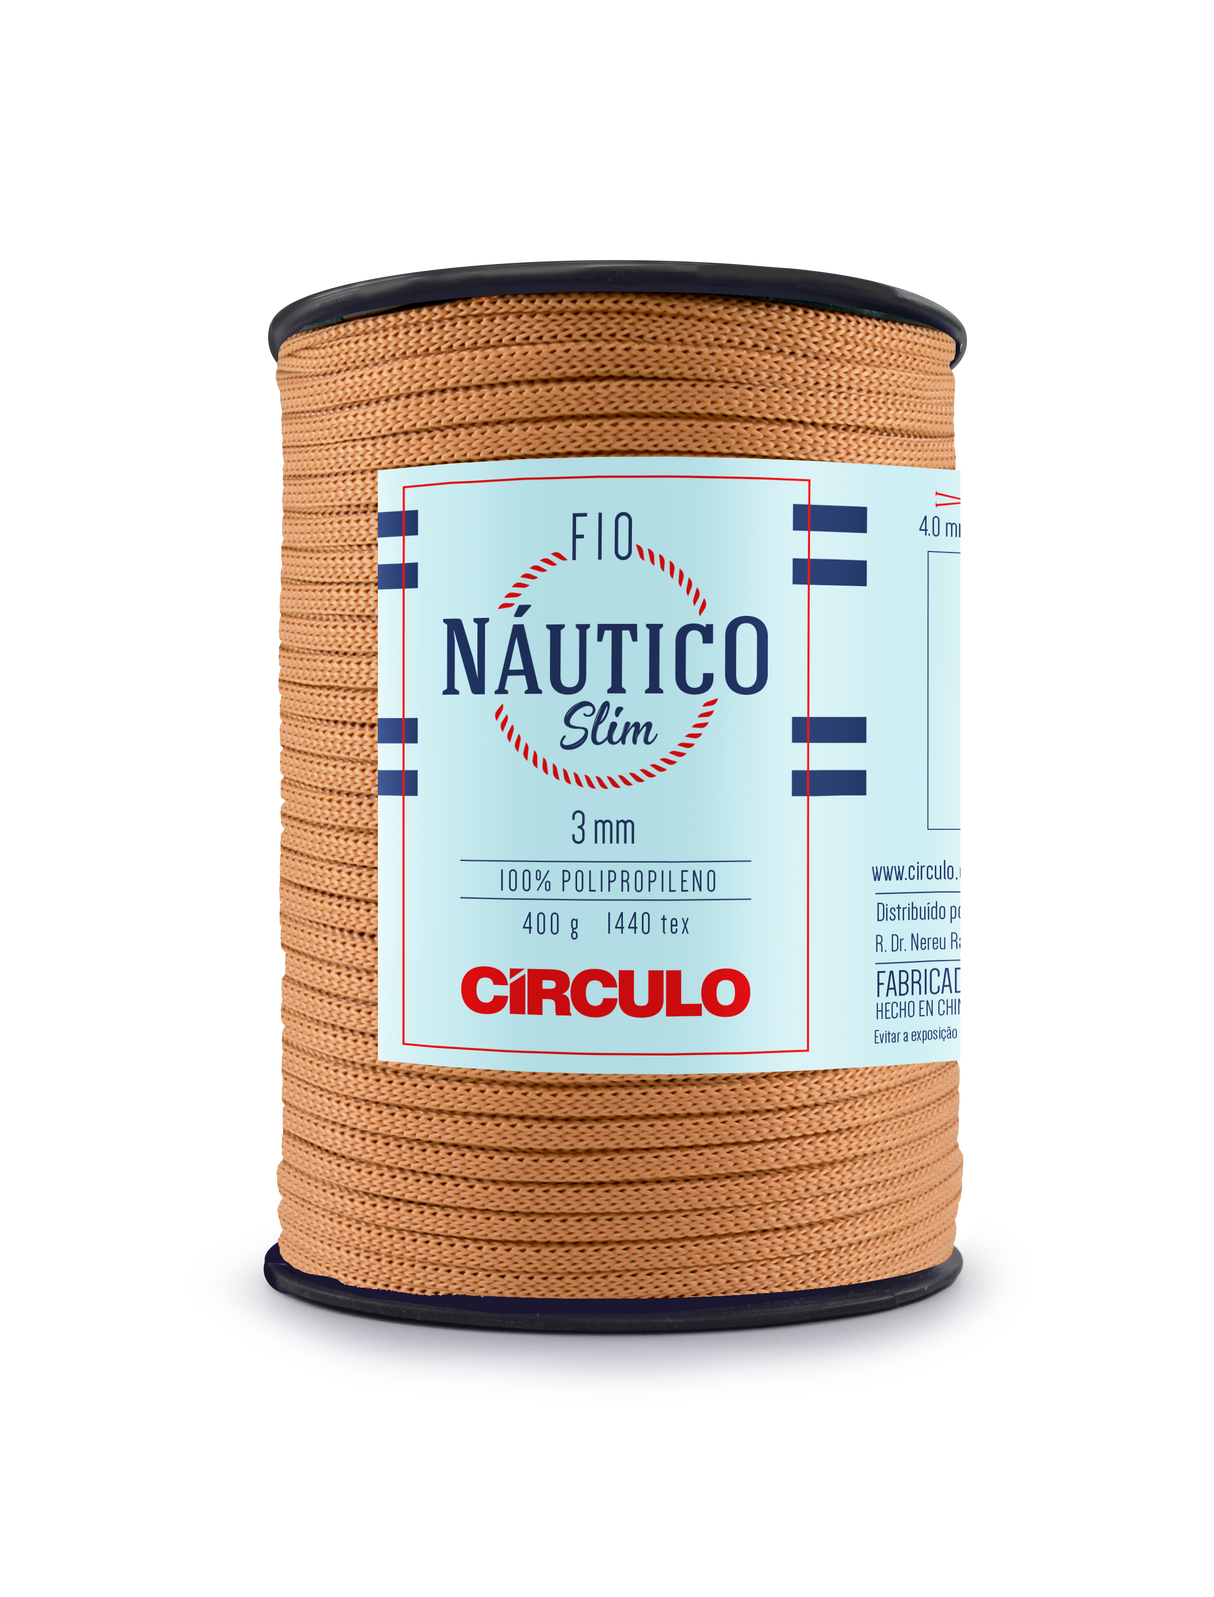 Circulo Fio Nautico Slim 3 mm color 7404